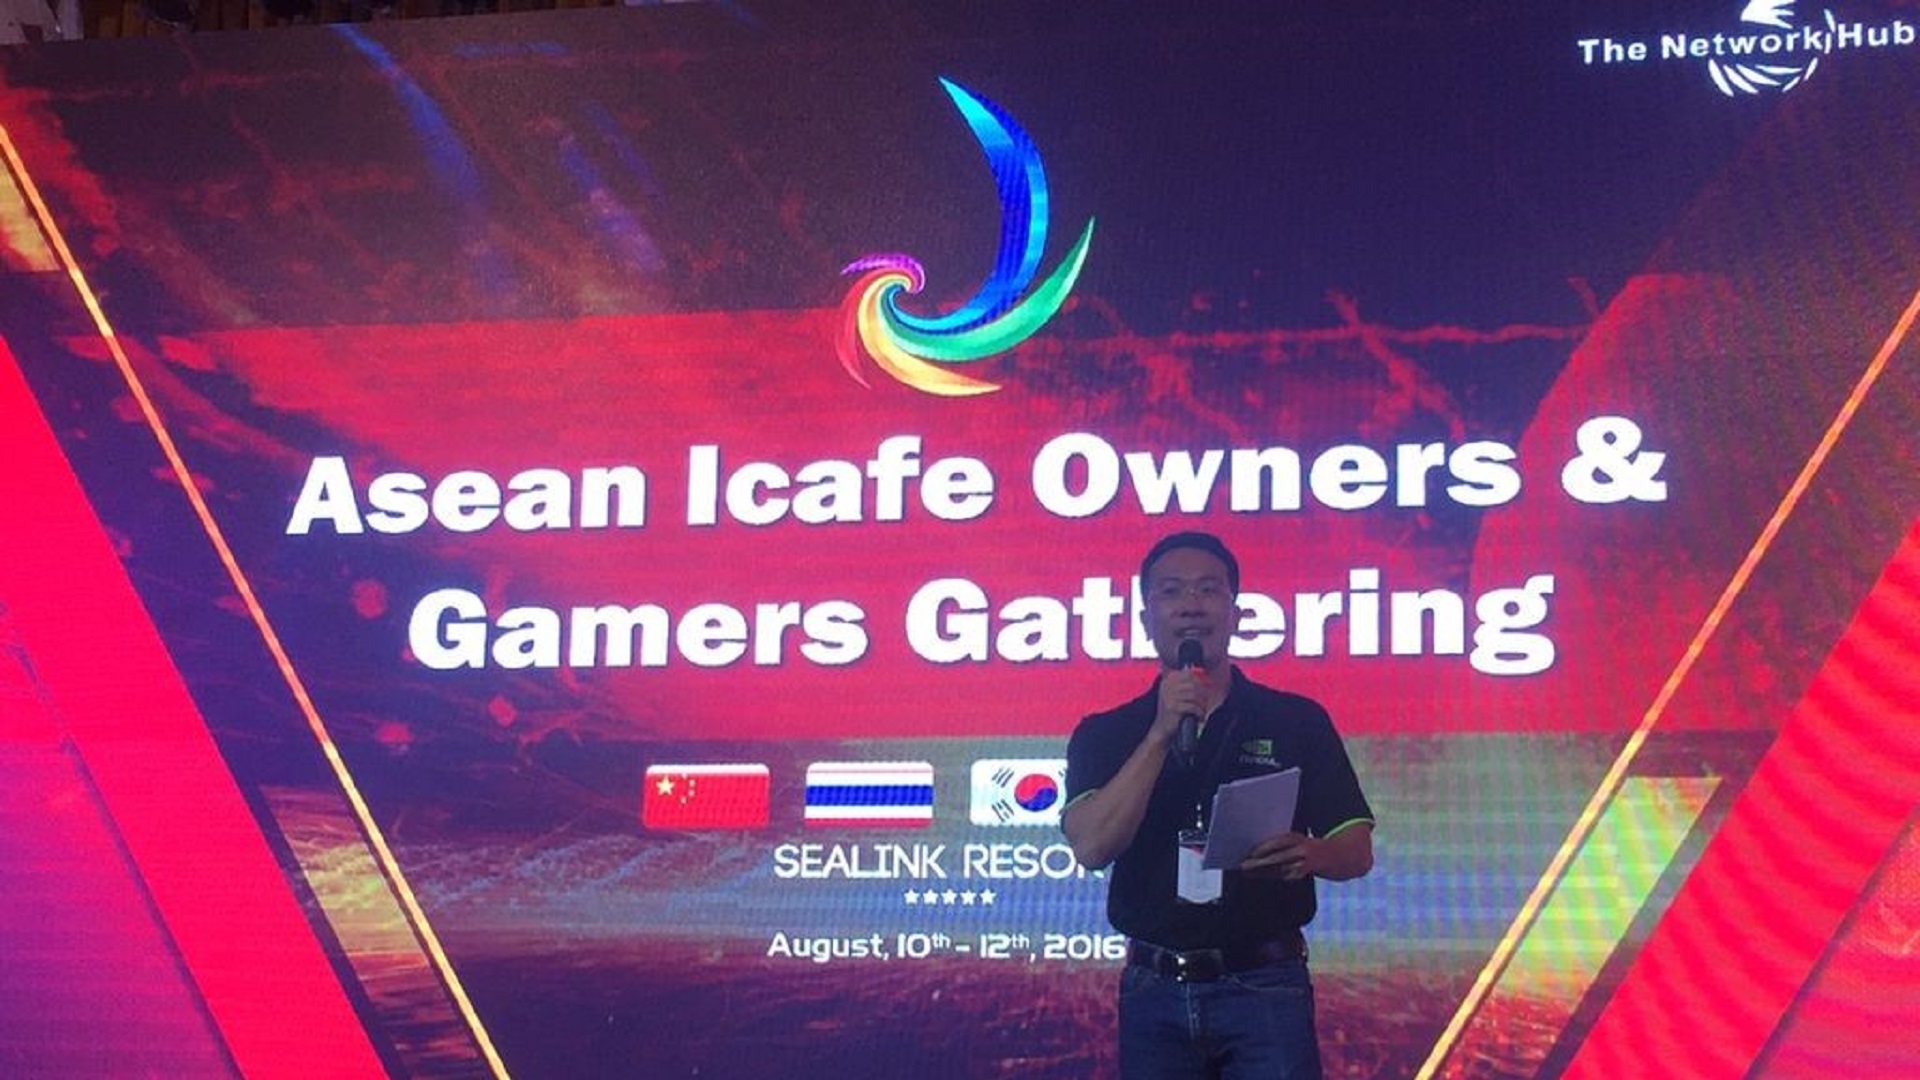 Colorful khởi động dự án iCafe Owner & Gamer Gathering đầu tiên tại ASEAN